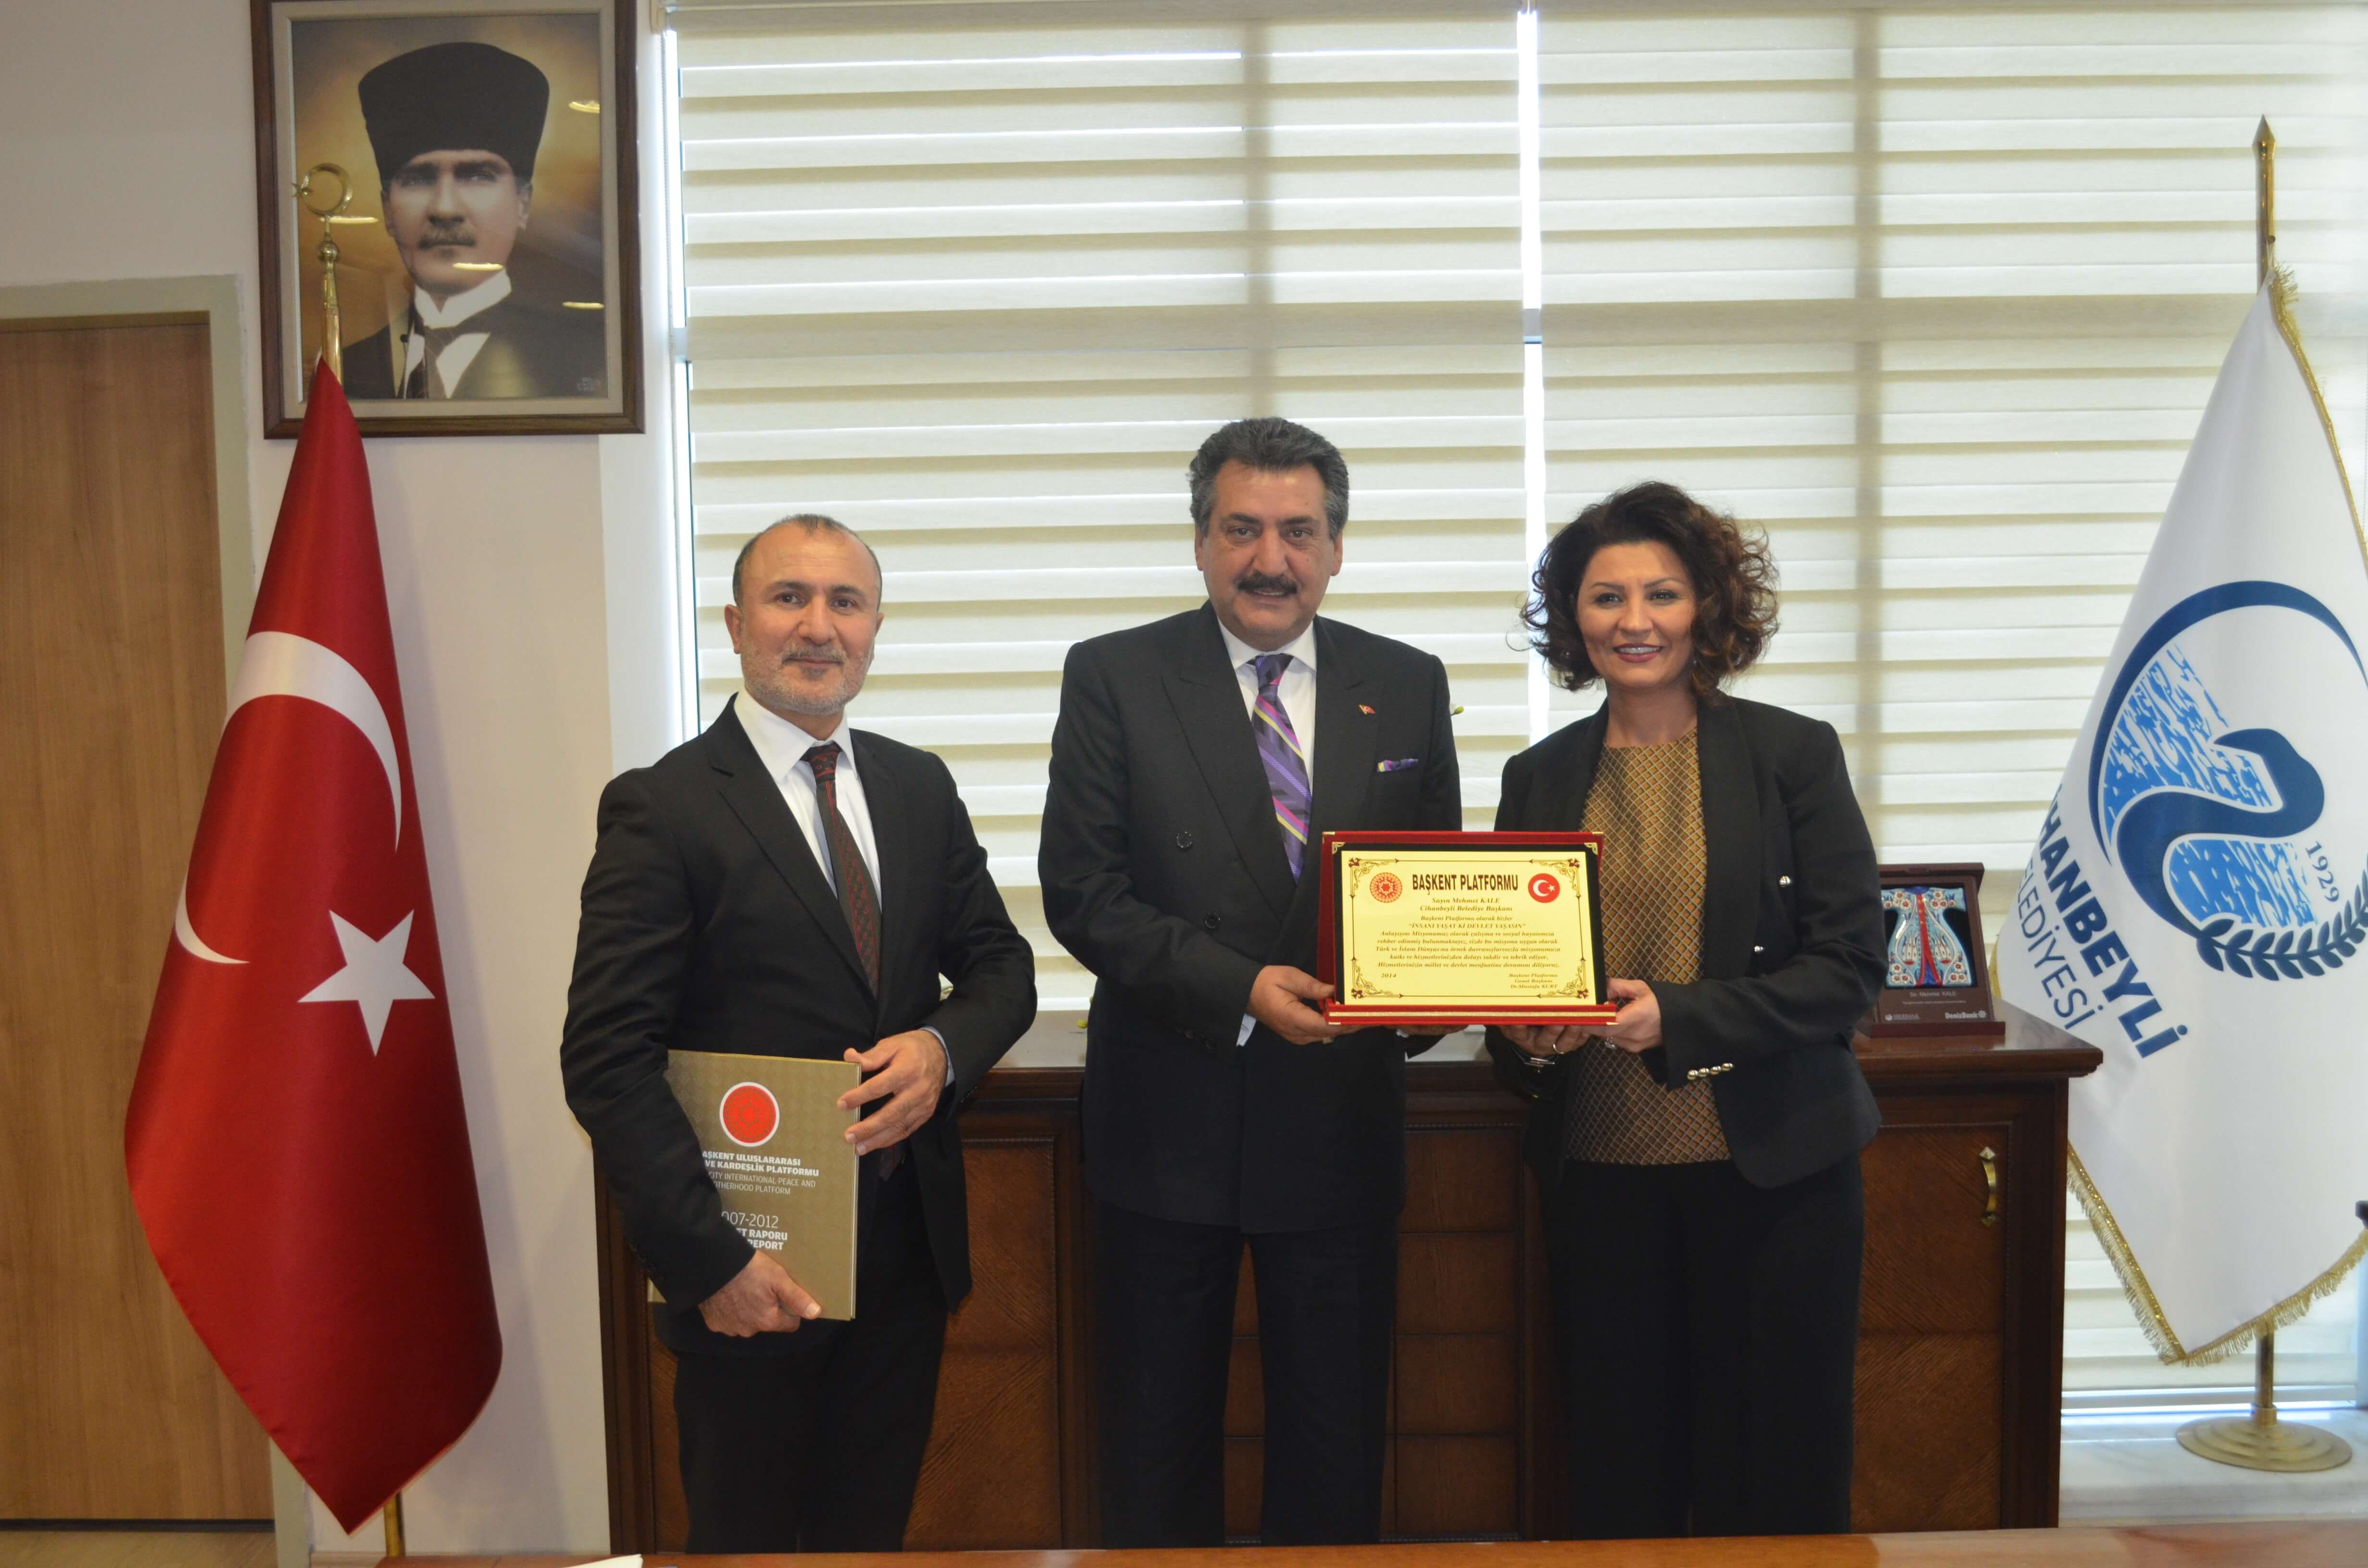 Başkent Platformu, "Hizmet Odaklı" çalışmalarından dolayı Cihanbeyli Belediye Başkanı Mehmet Kale